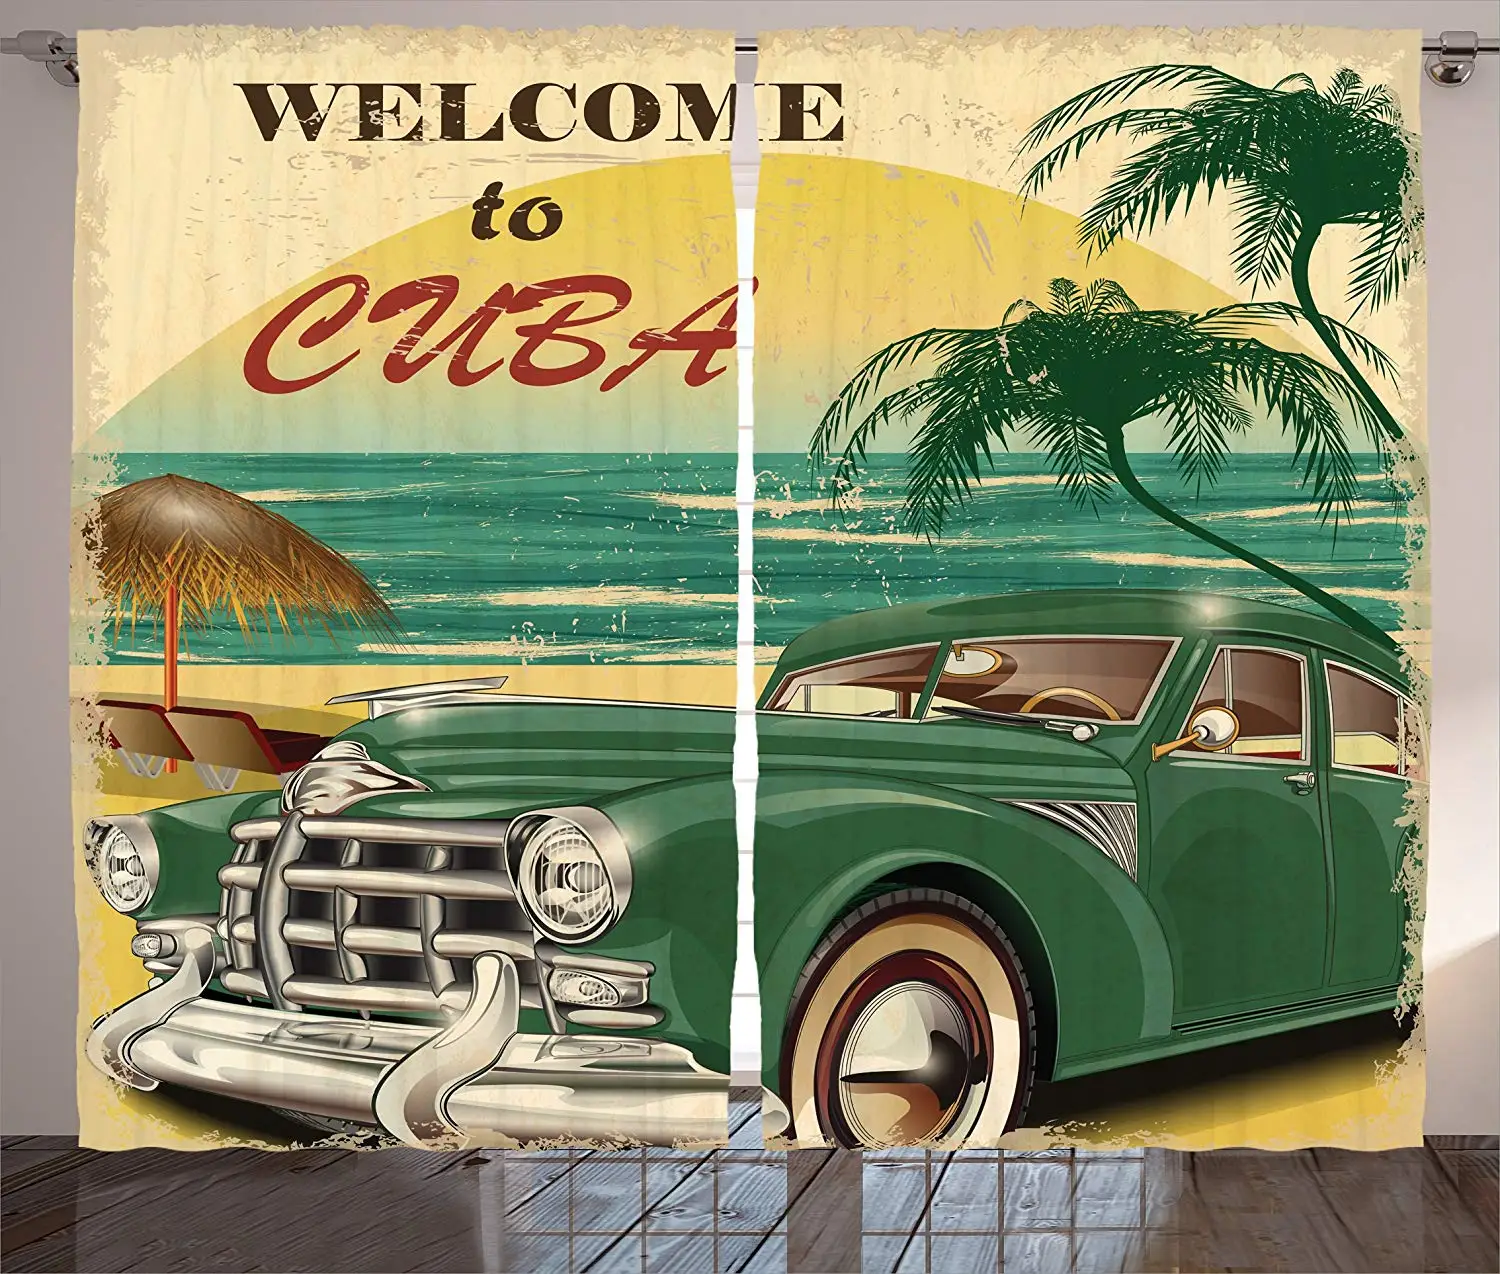 

Светонепроницаемые шторы 1950s, ностальгические, добро пожаловать на Куба, Artsy, классический автомобиль, пляж, океан и пальмы, декор для гостин...